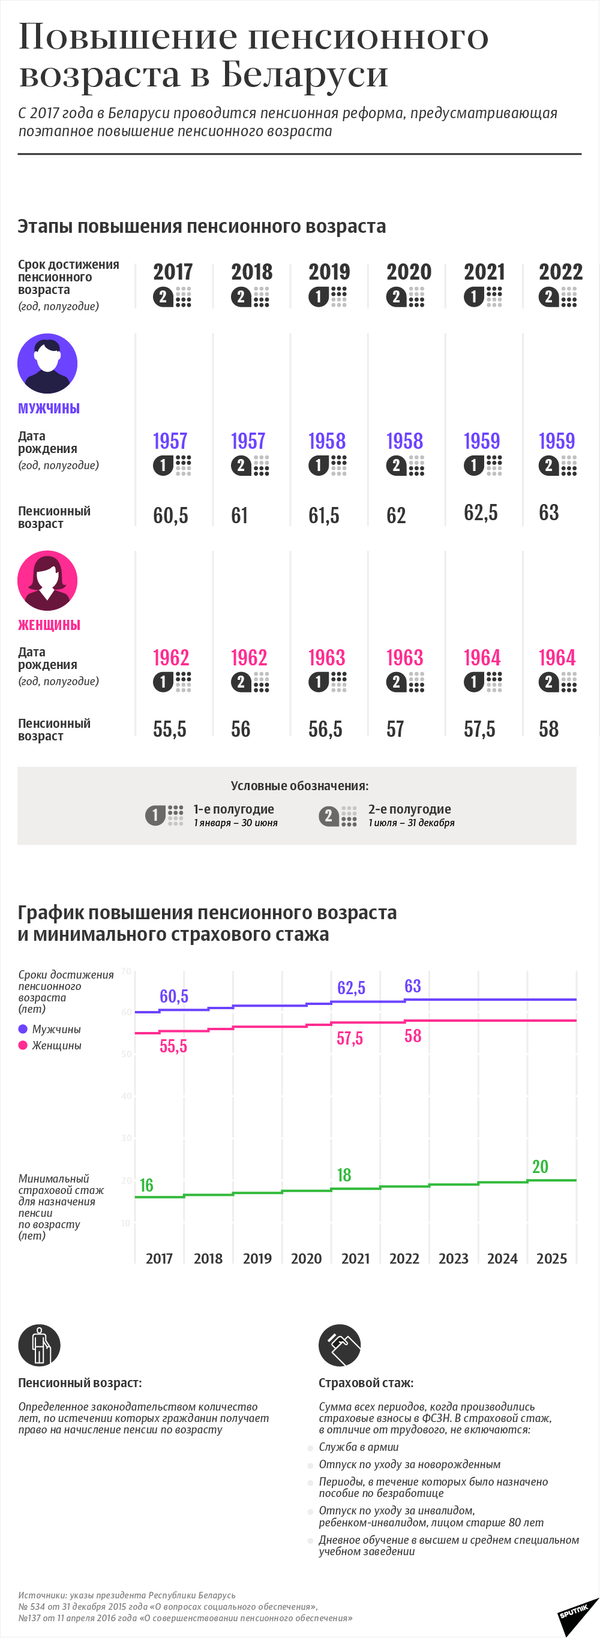 Этапы повышения пенсионного возраста и минимального страхового стажа в Беларуси | Инфографика sputnik.by - Sputnik Беларусь